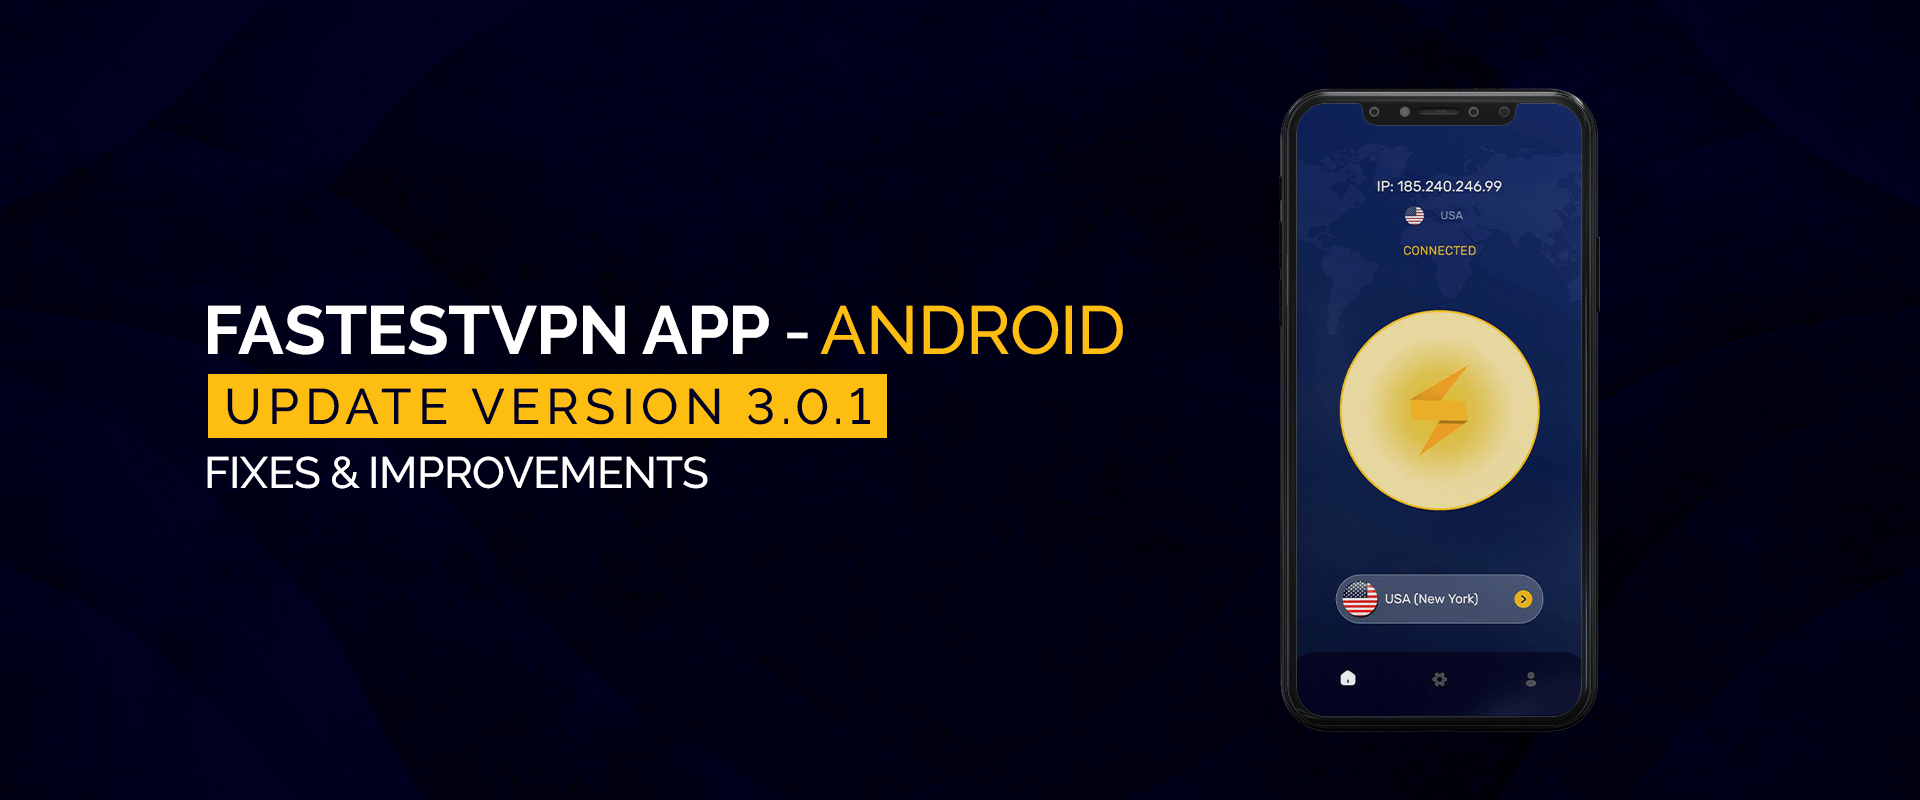 FastestVPN Android 应用程序更新版本 3.0.1